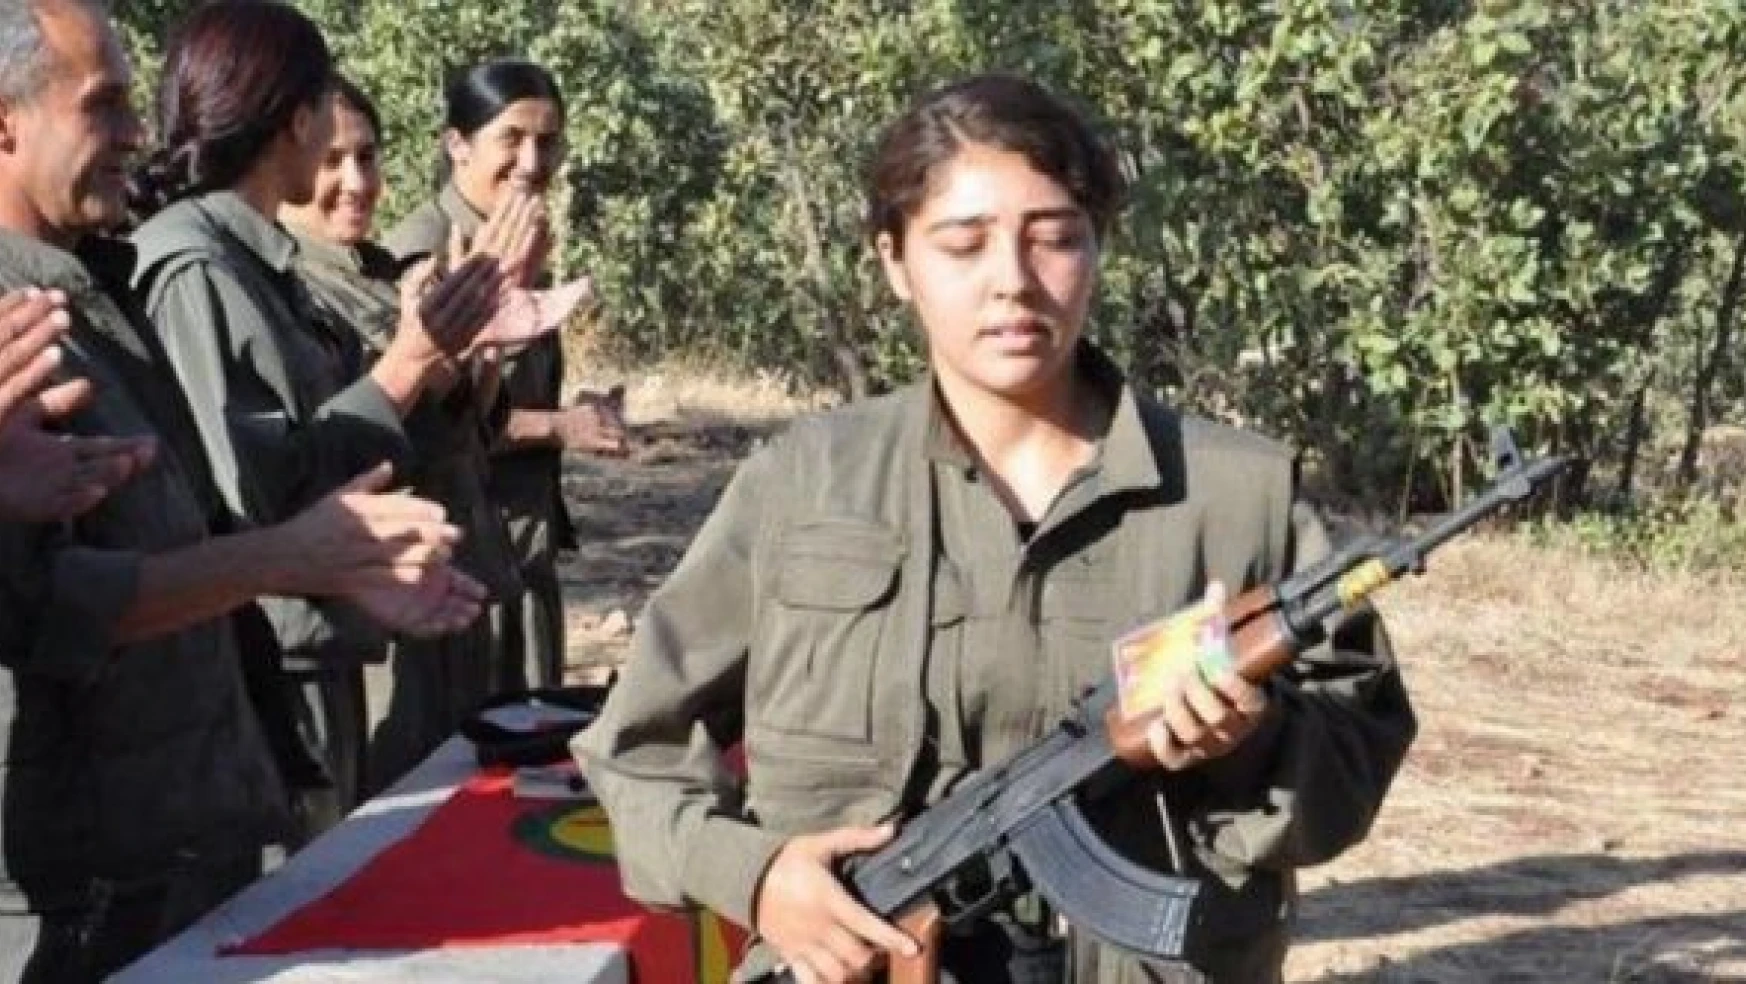 İBB çalışanı, PKK üyeliğinden gözaltına alındı